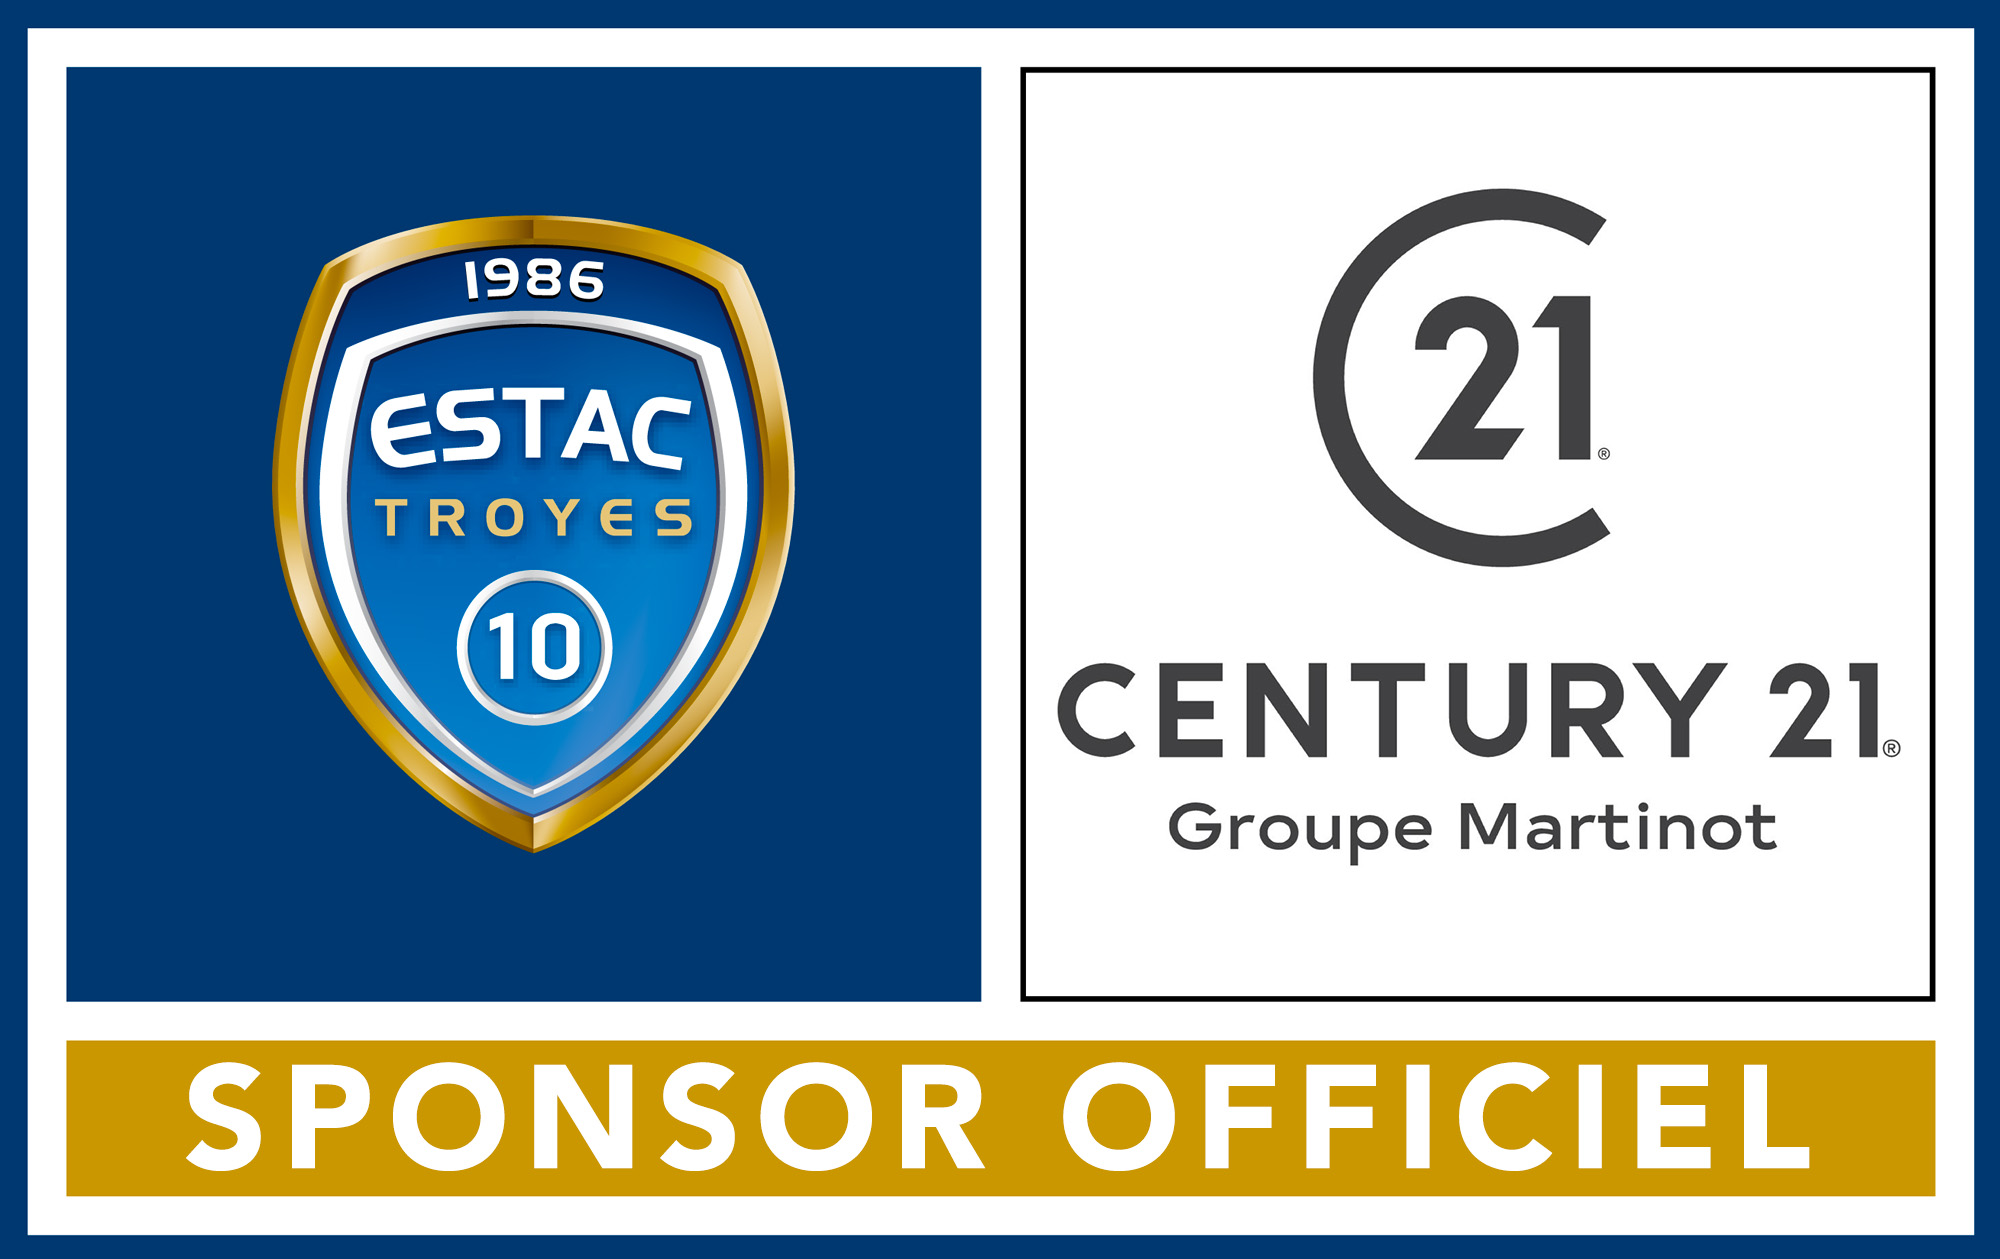 CENTURY 21 Groupe Martinot devient le sponsor officiel de l’ESTAC !